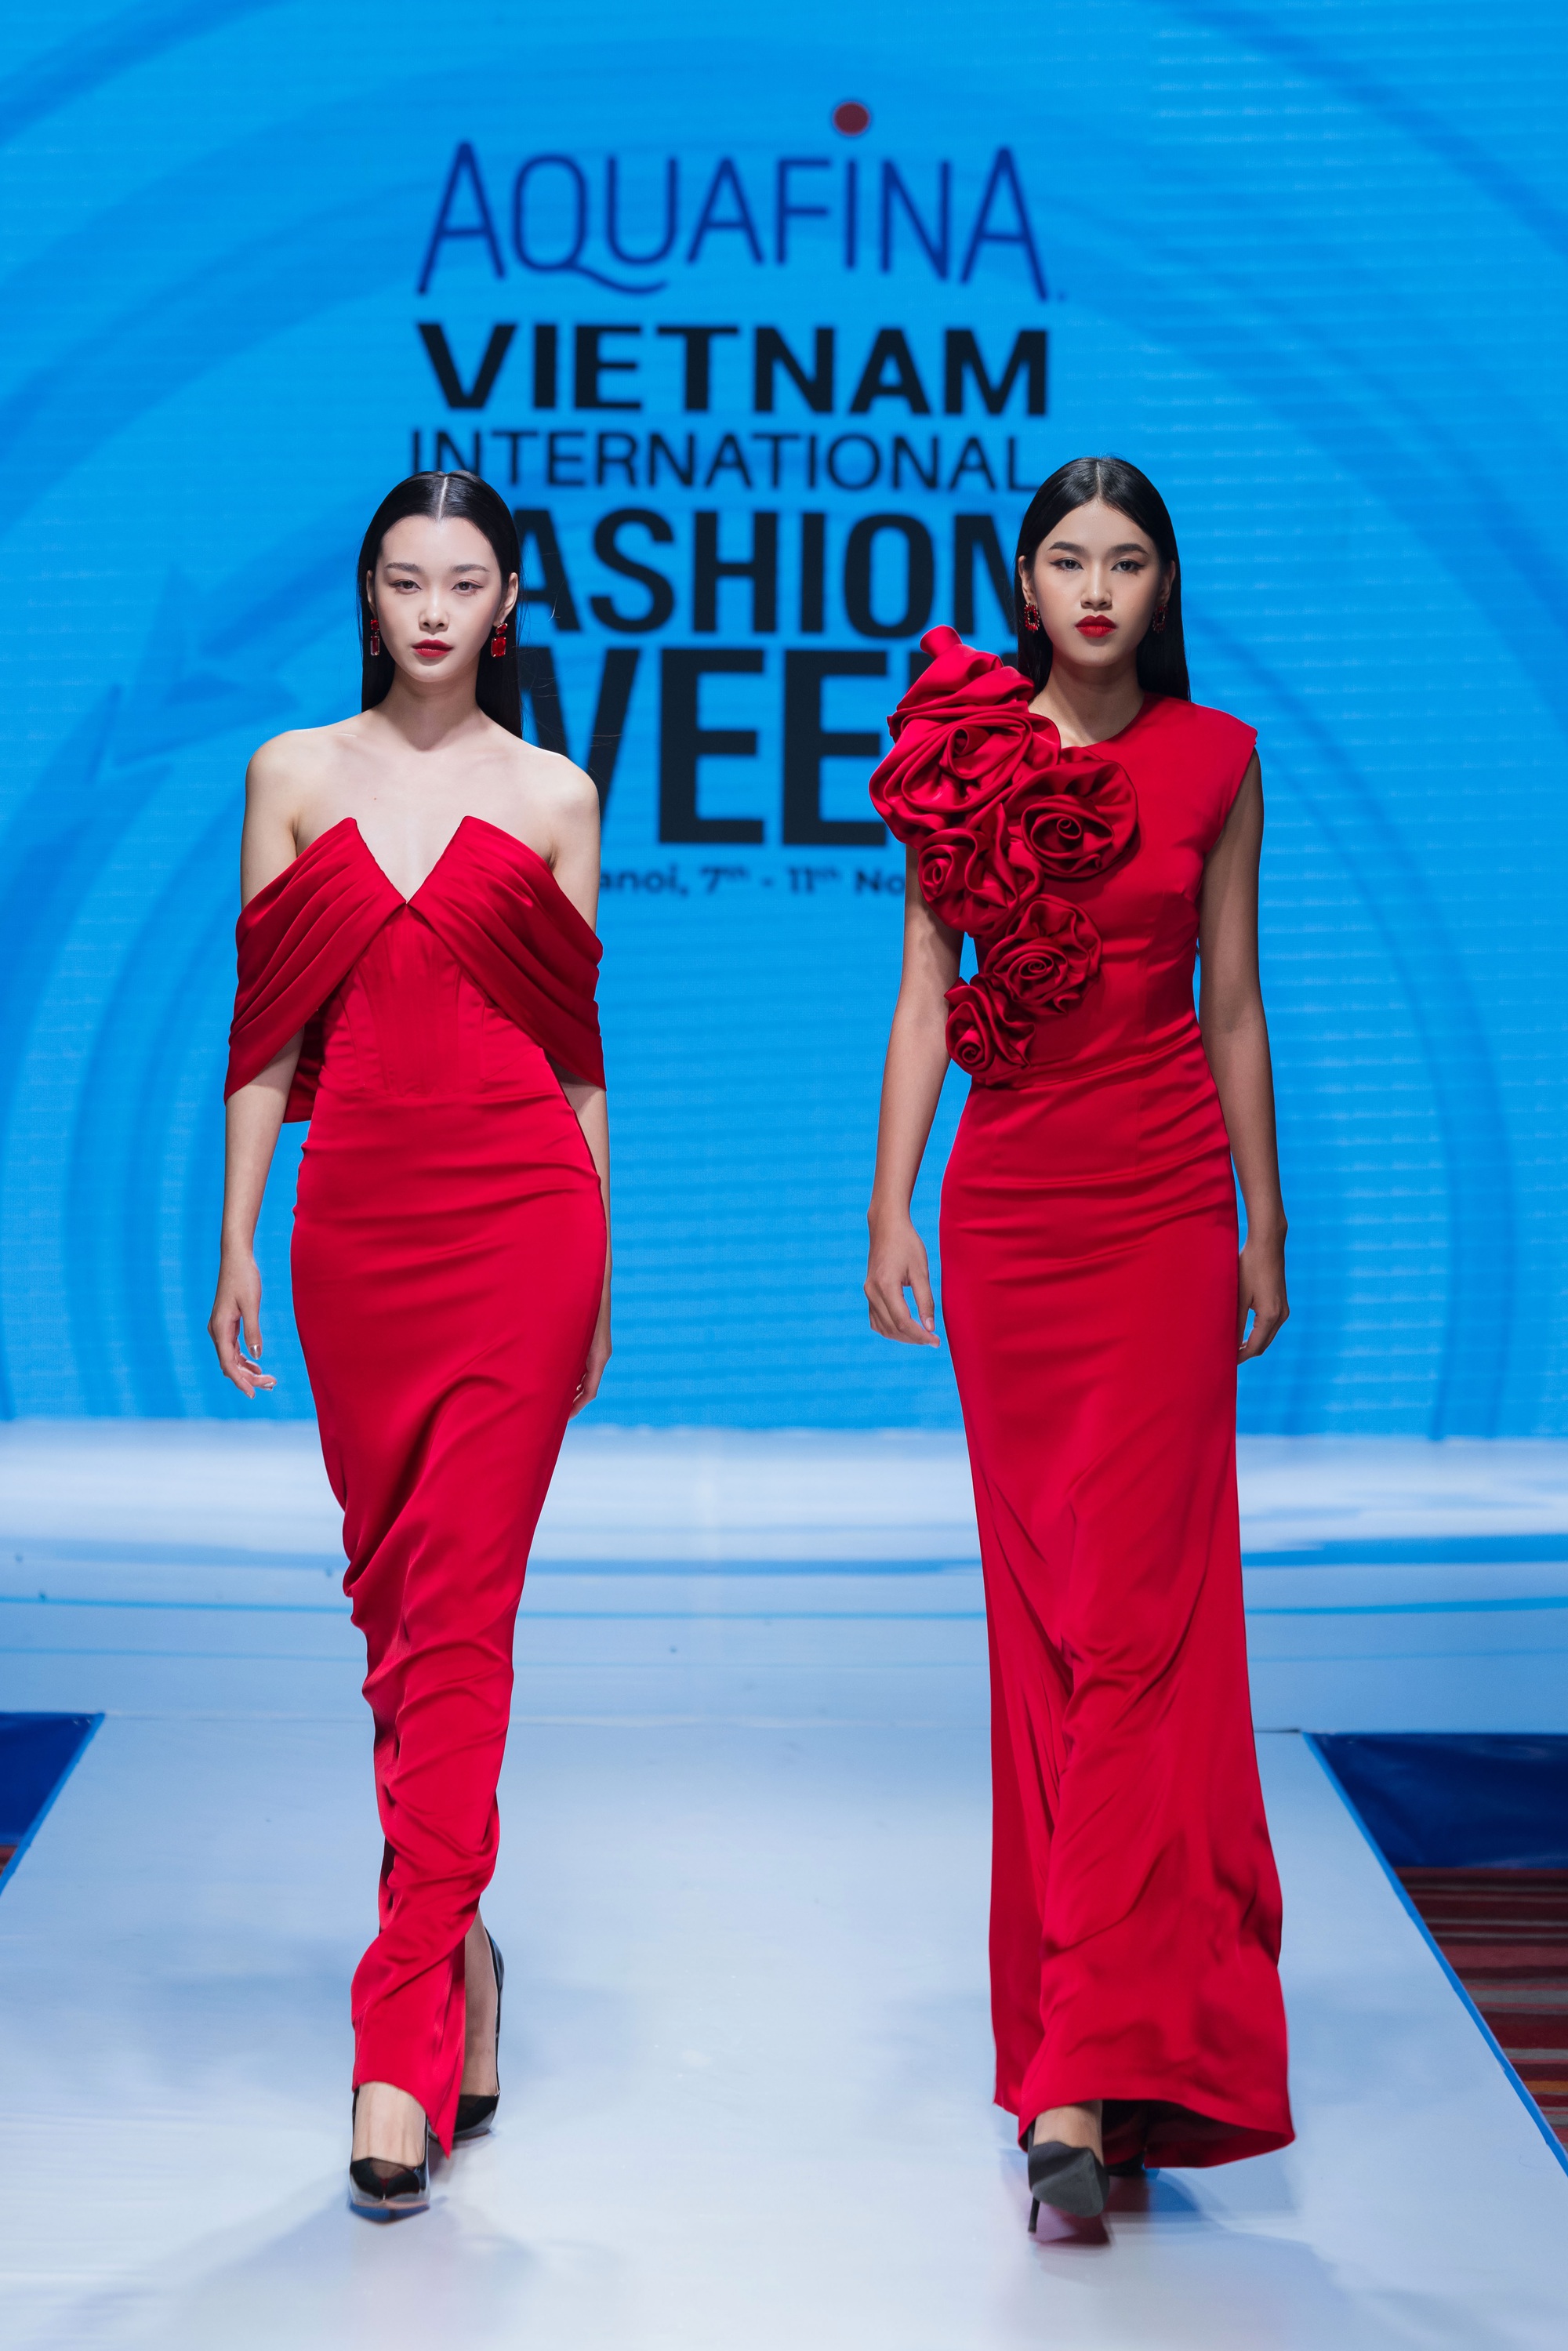 16 nhà thiết kế, thương hiệu sẽ tham dự Aquafina Tuần lễ thời trang Quốc tế Việt Nam - Ảnh 7.